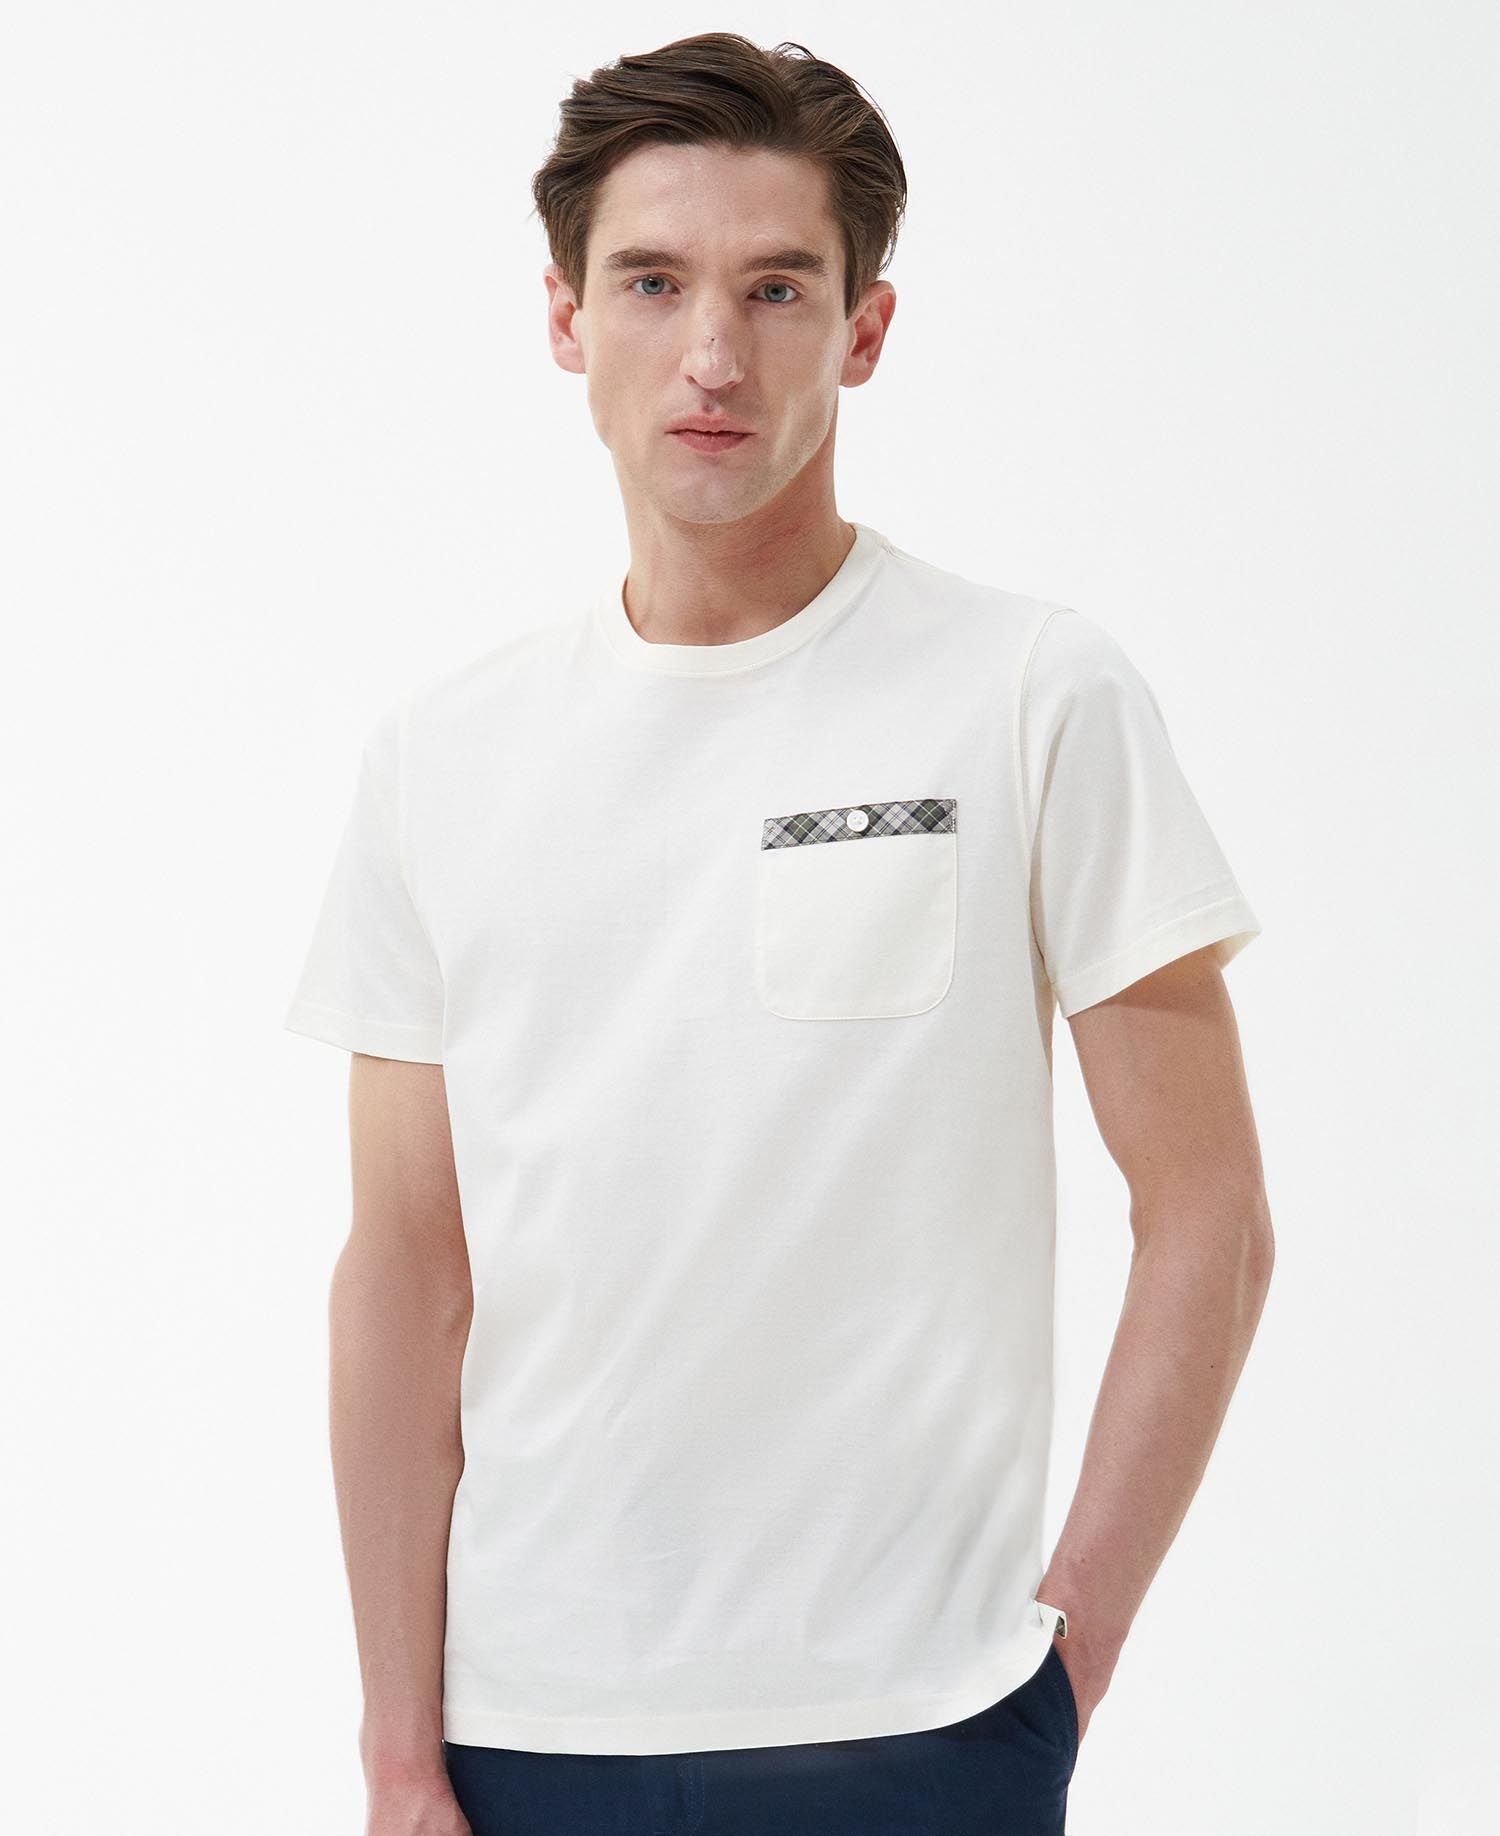 Barbour Durness Pocket T-Shirt - Whisper White